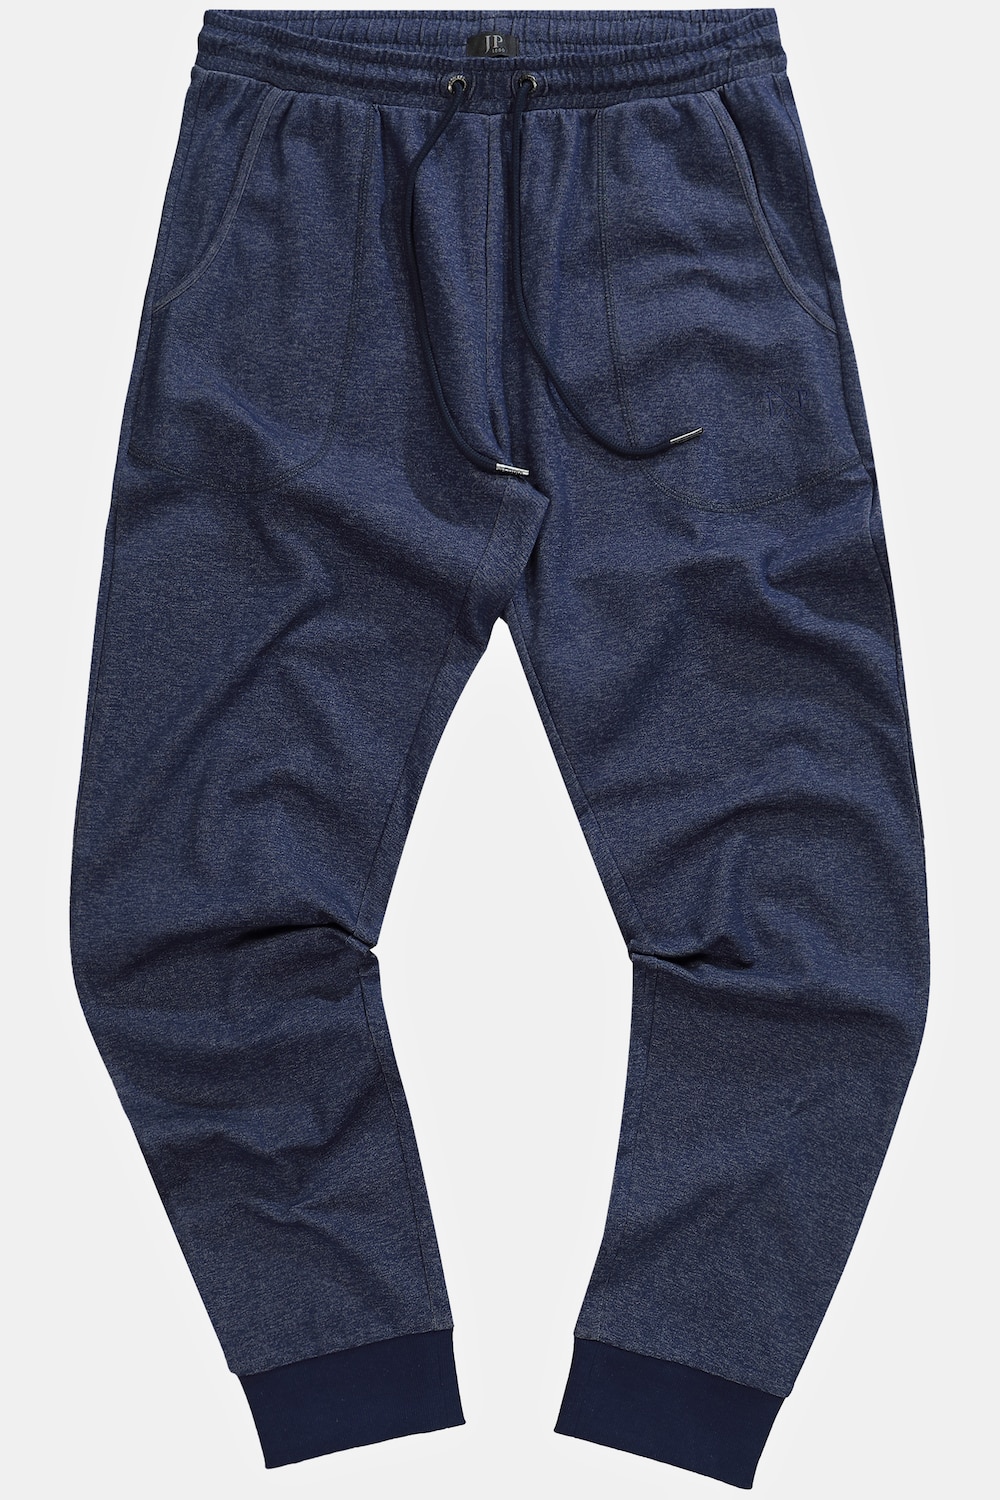 Grote Maten Pyjamabroek, Heren, blauw, Maat: 4XL, Katoen, JP1880